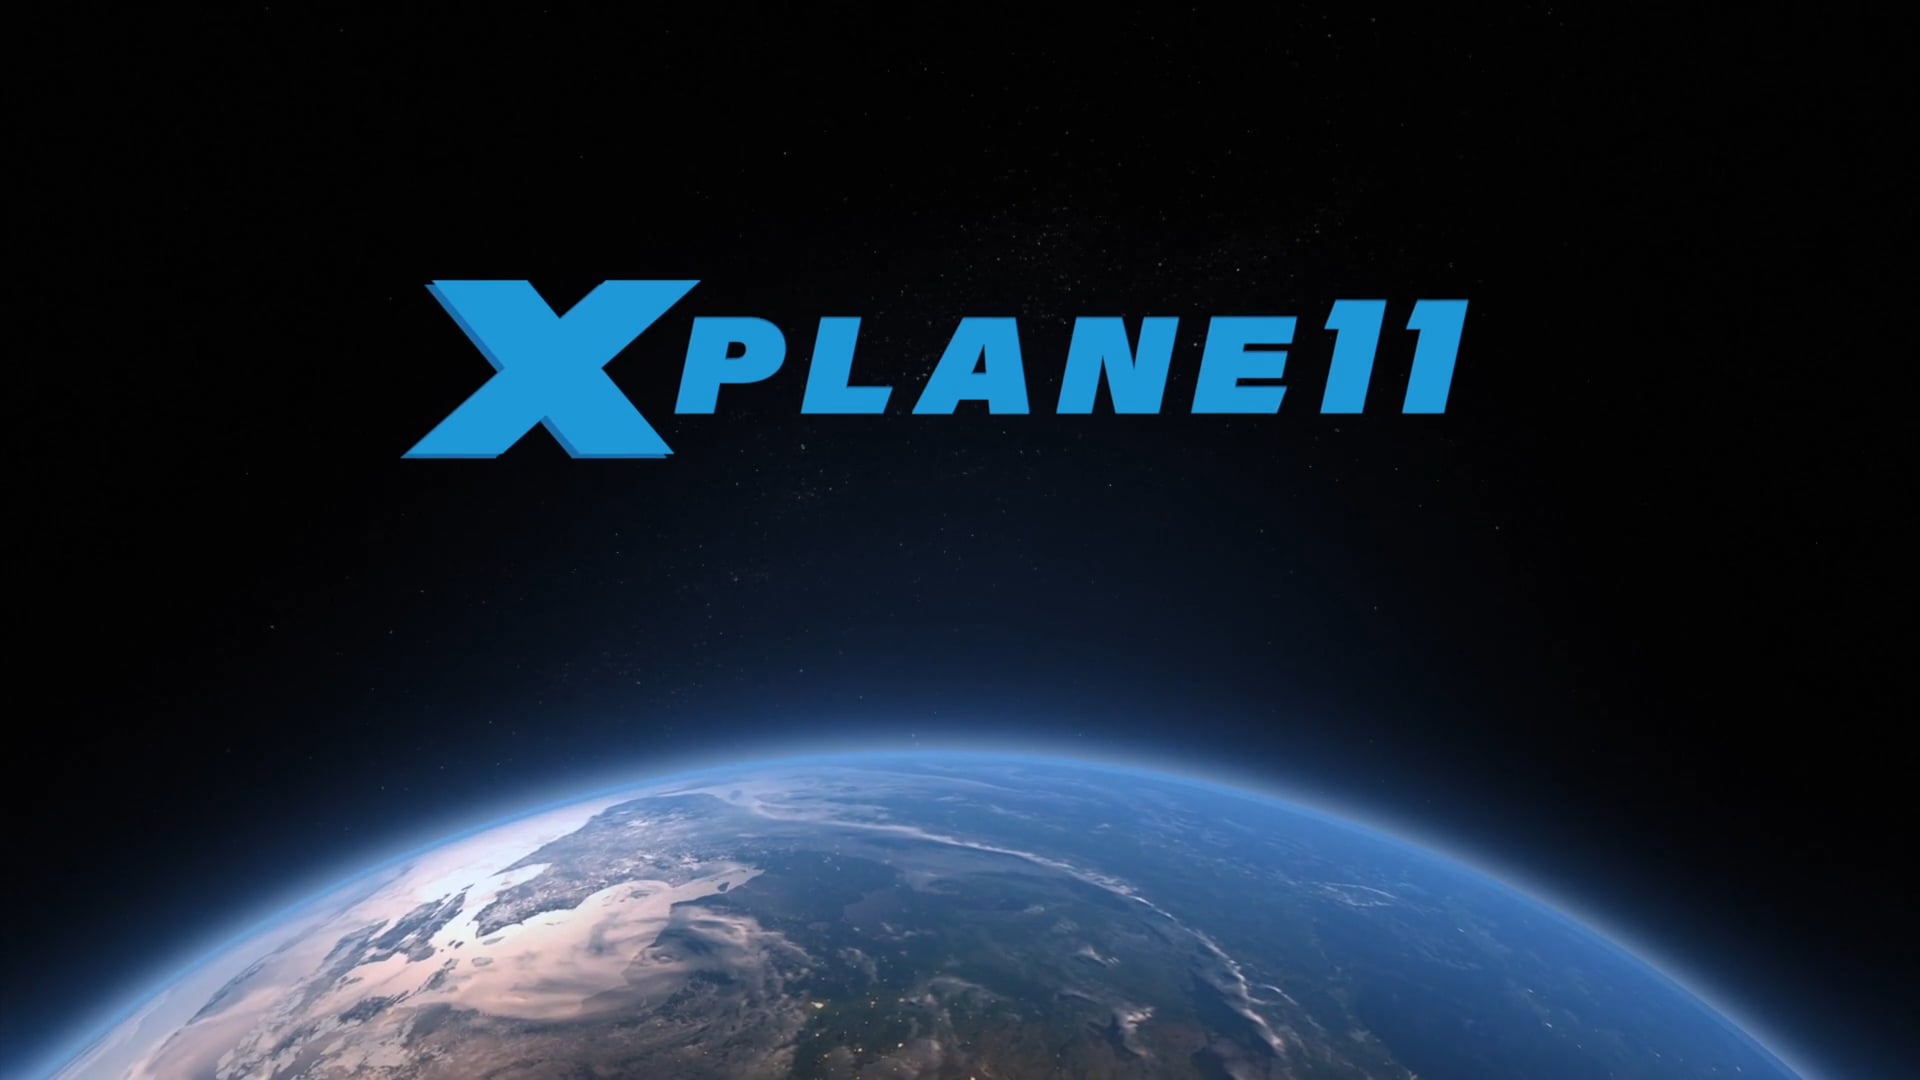 Авиасимулятор X-Plane 11: настройка игры для VR и рекомендуемые аддоны